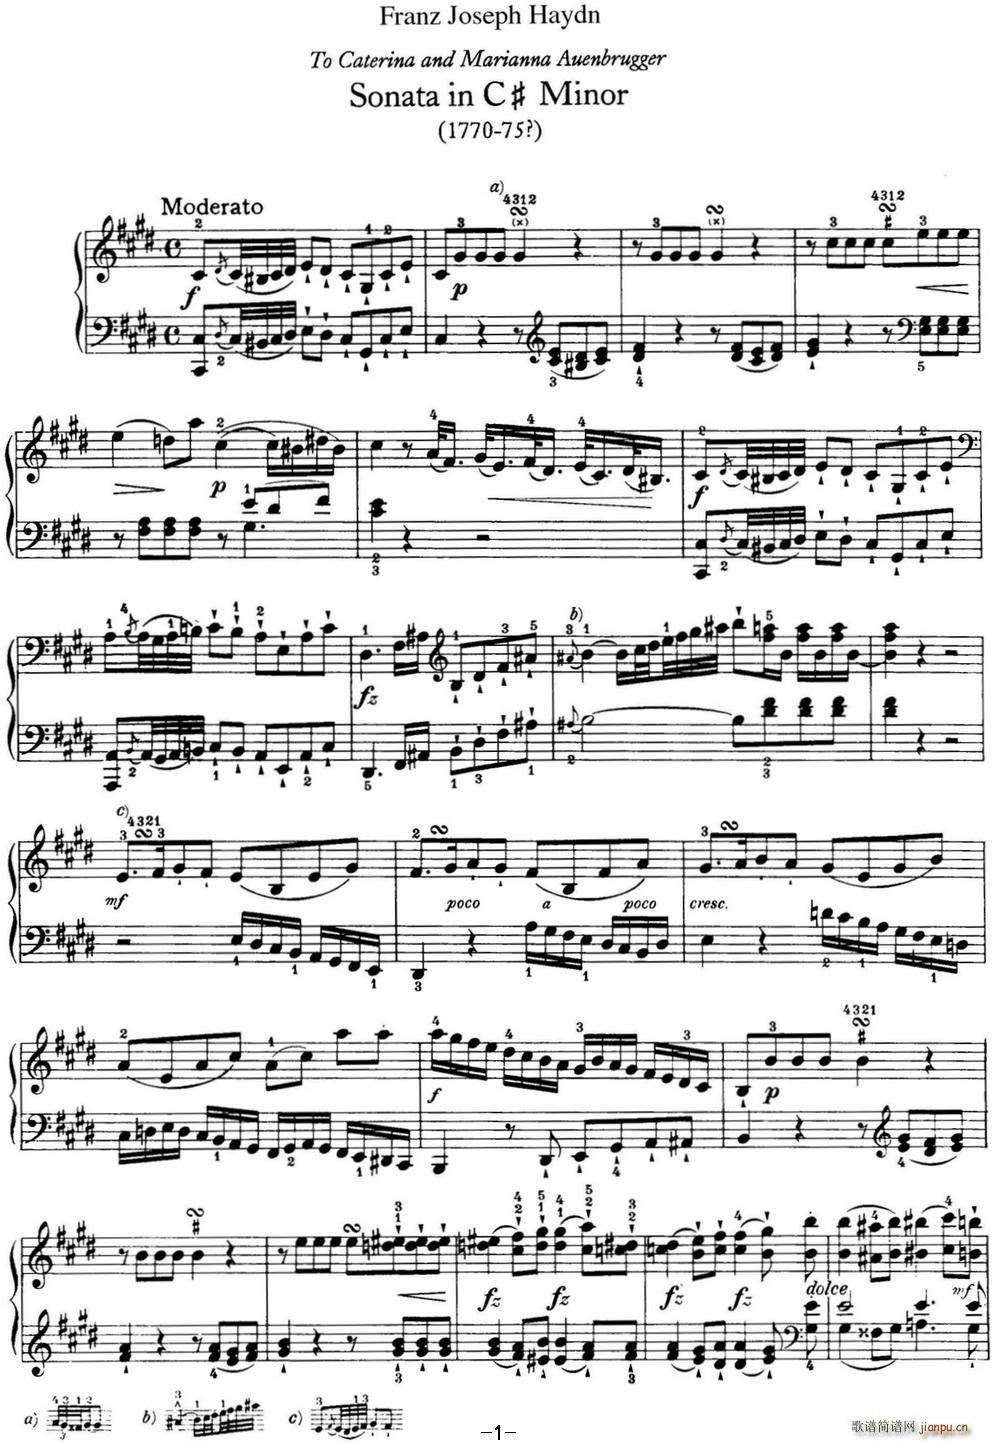   Hob XVI 36 in C sharp minor()1